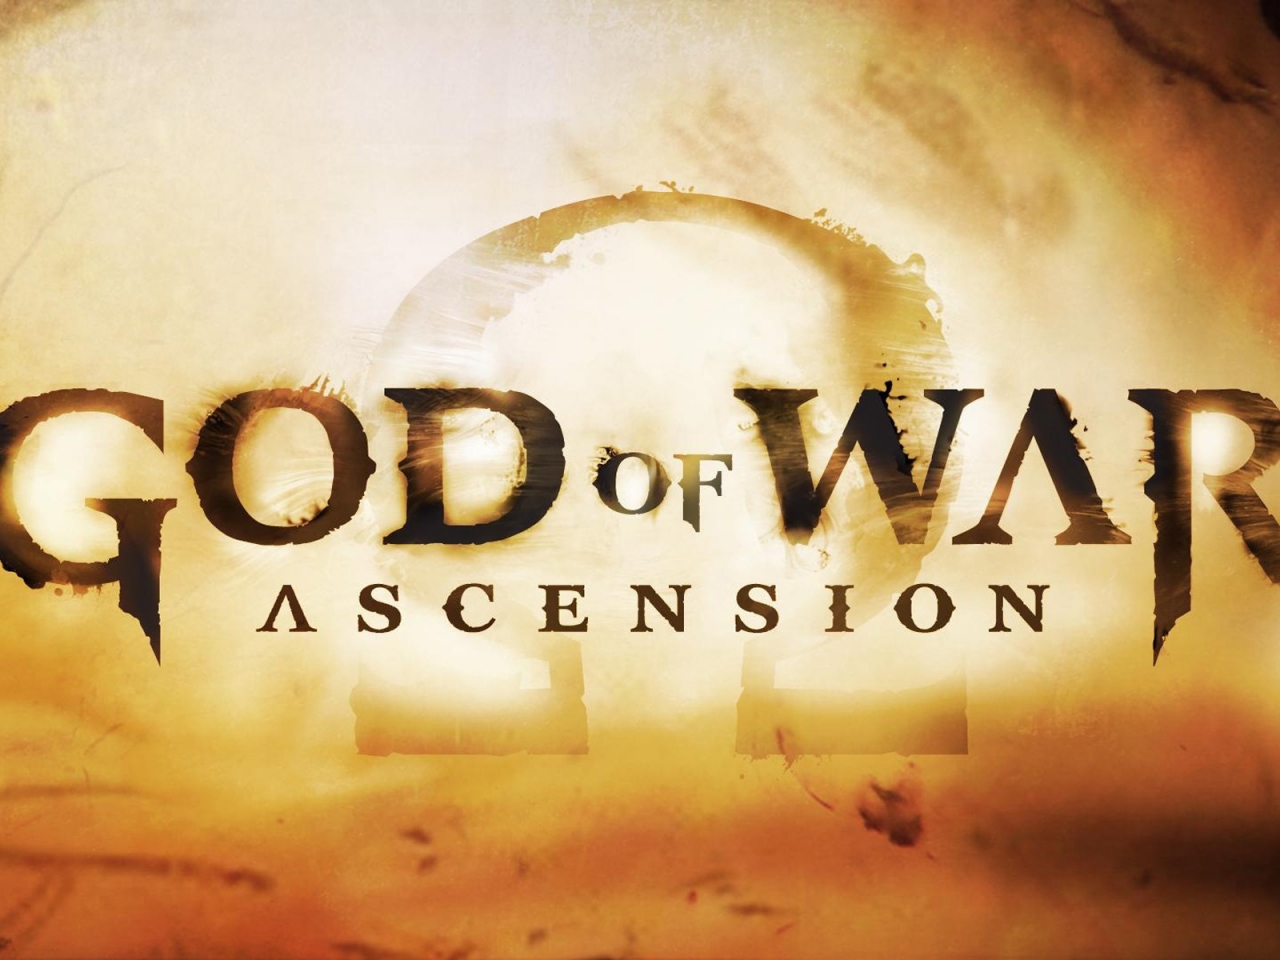 God of War Ascension for 1280 x 960 resolution